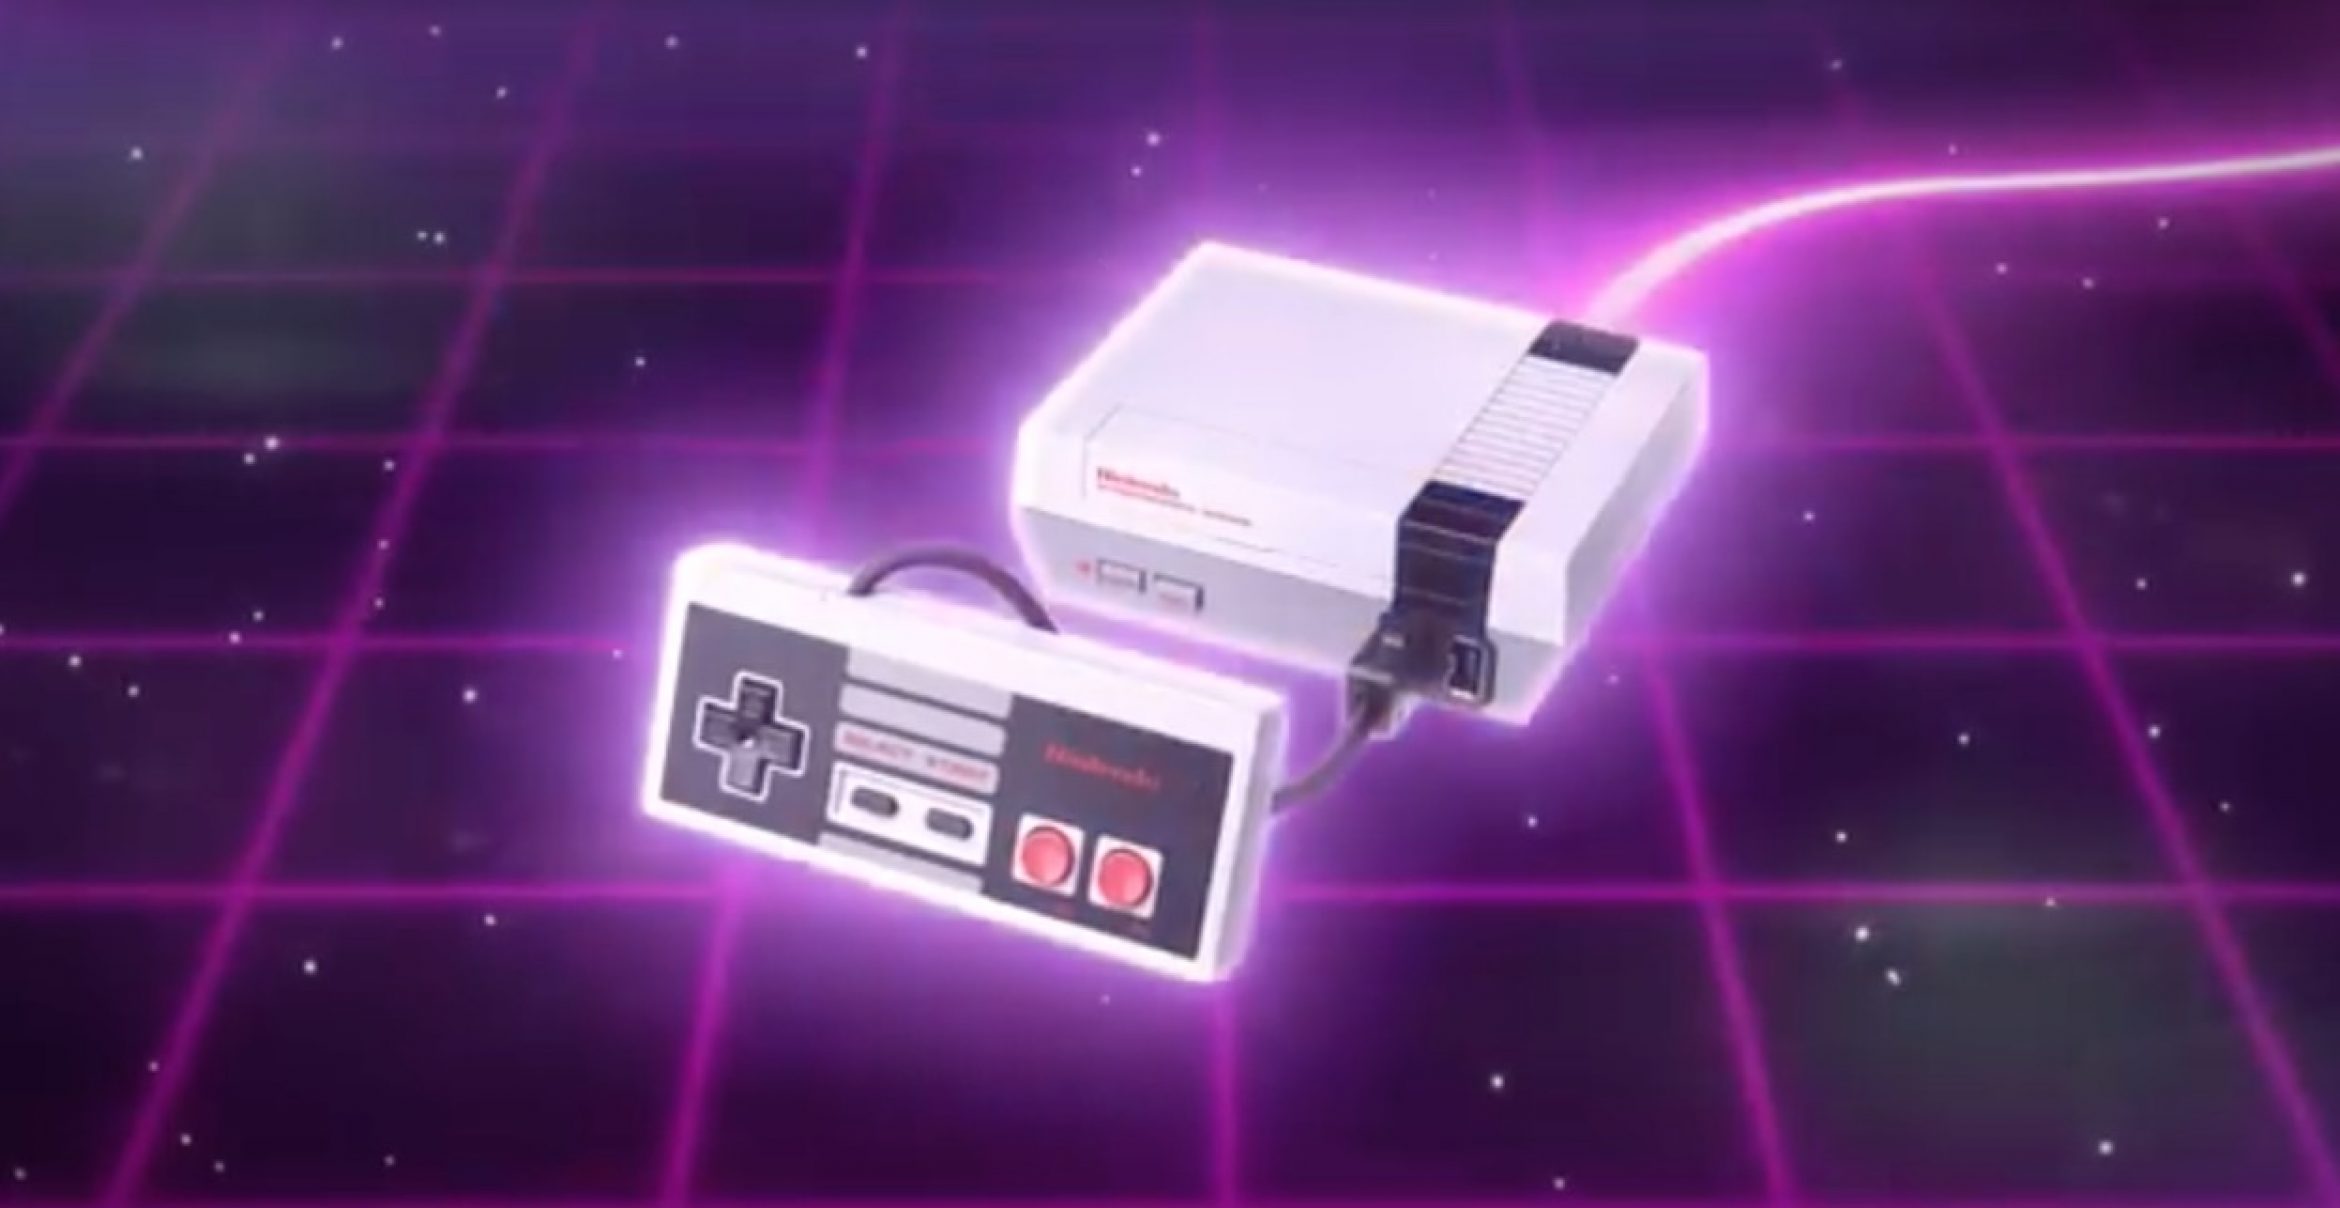 NES Classic Edition: So sieht der Werbeclip zur Retro-Konsole aus